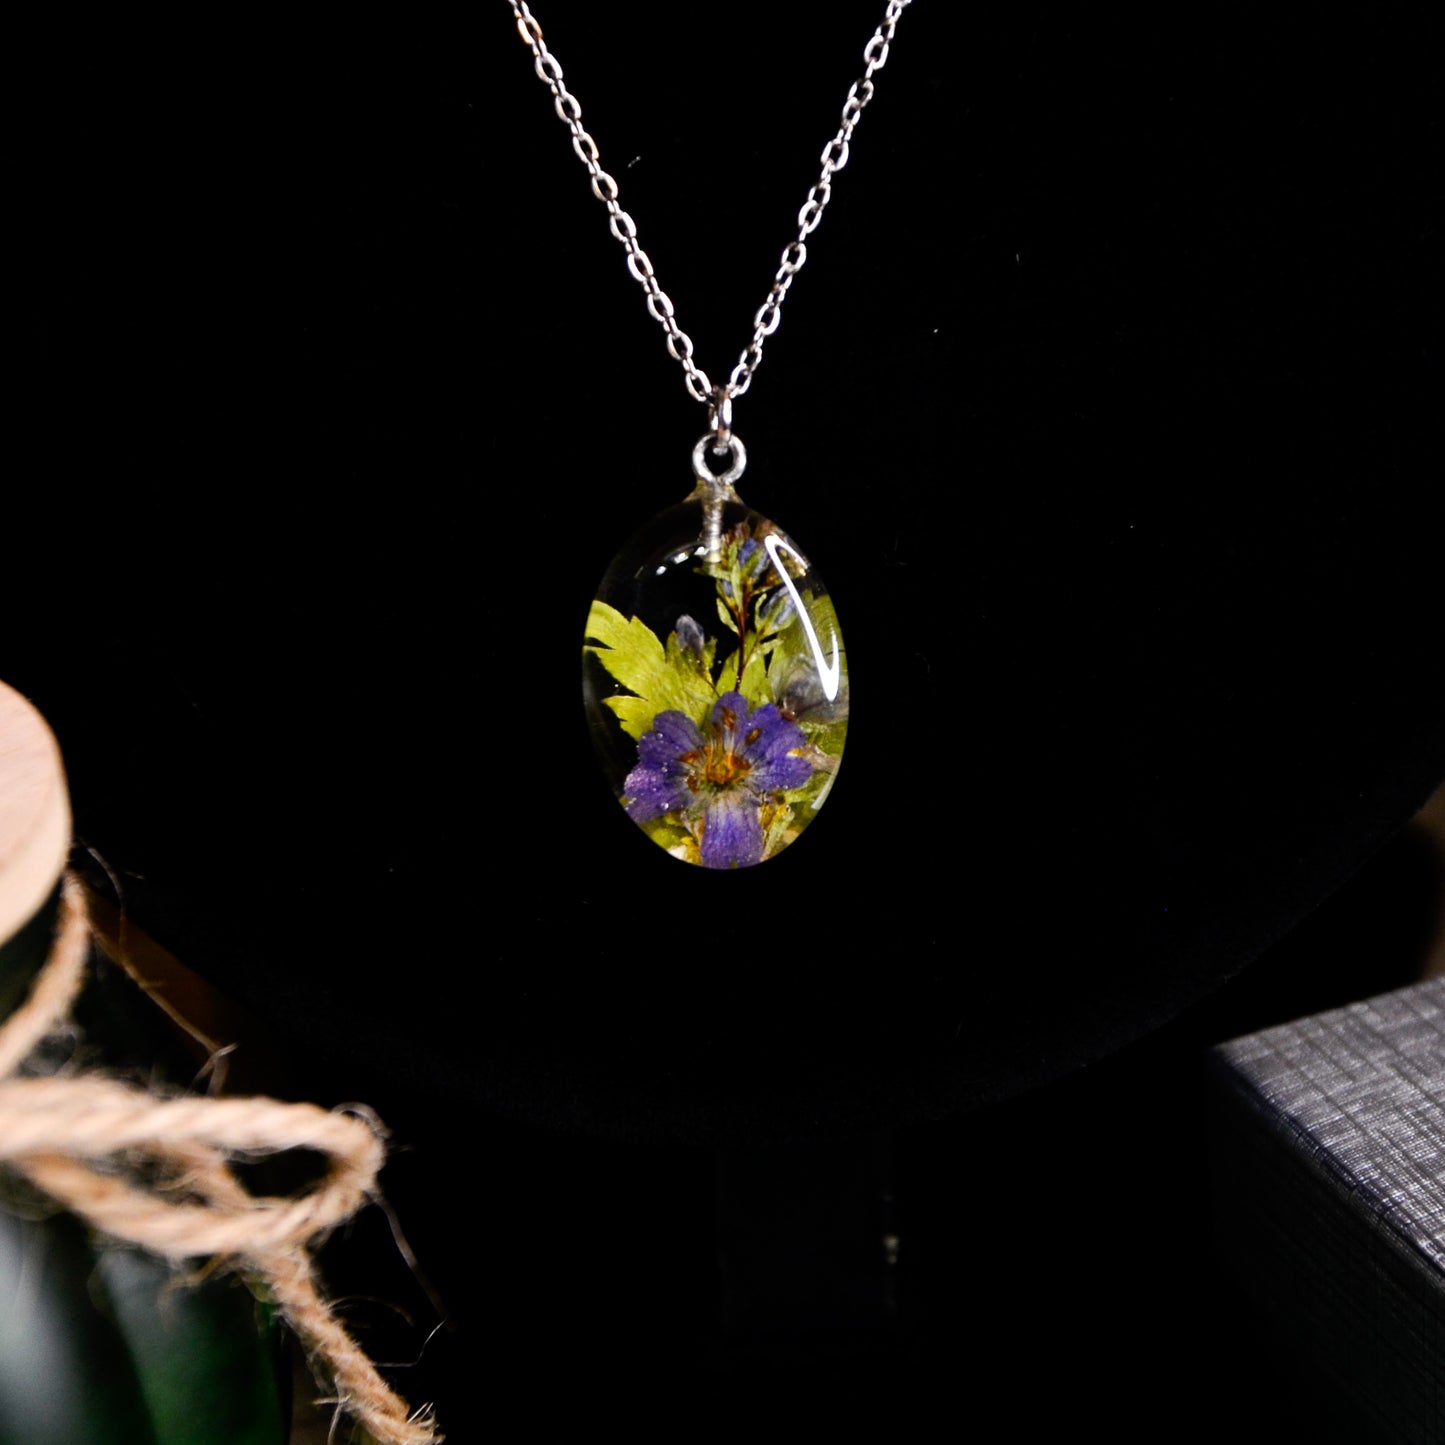 Naszyjnik owalny srebrny z kompozycją kwiatową - kolor srebrny, zielony i fioletowy